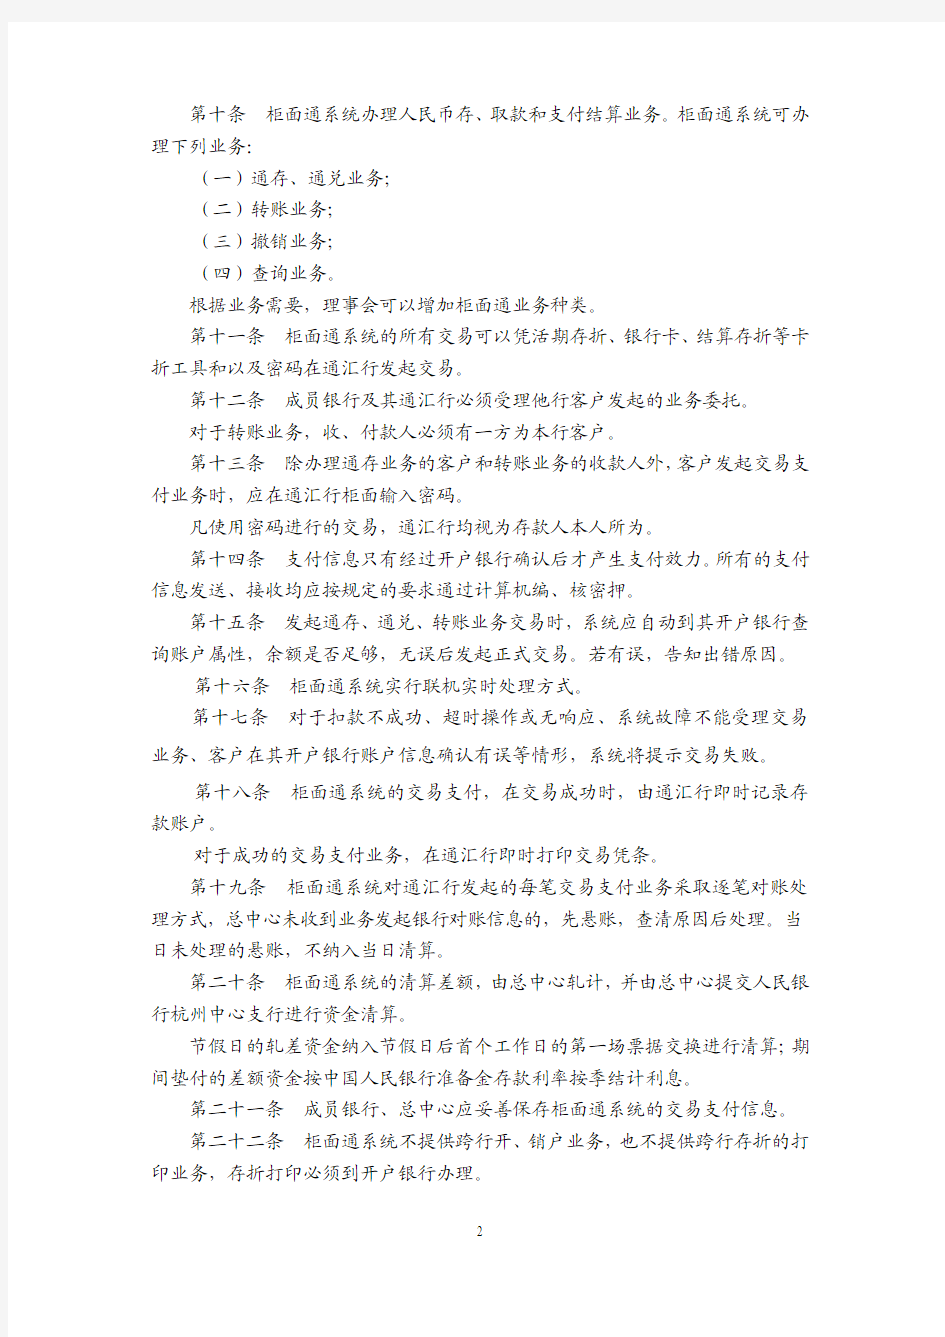 杭州银行柜面通系统业务处理办法1.0.3